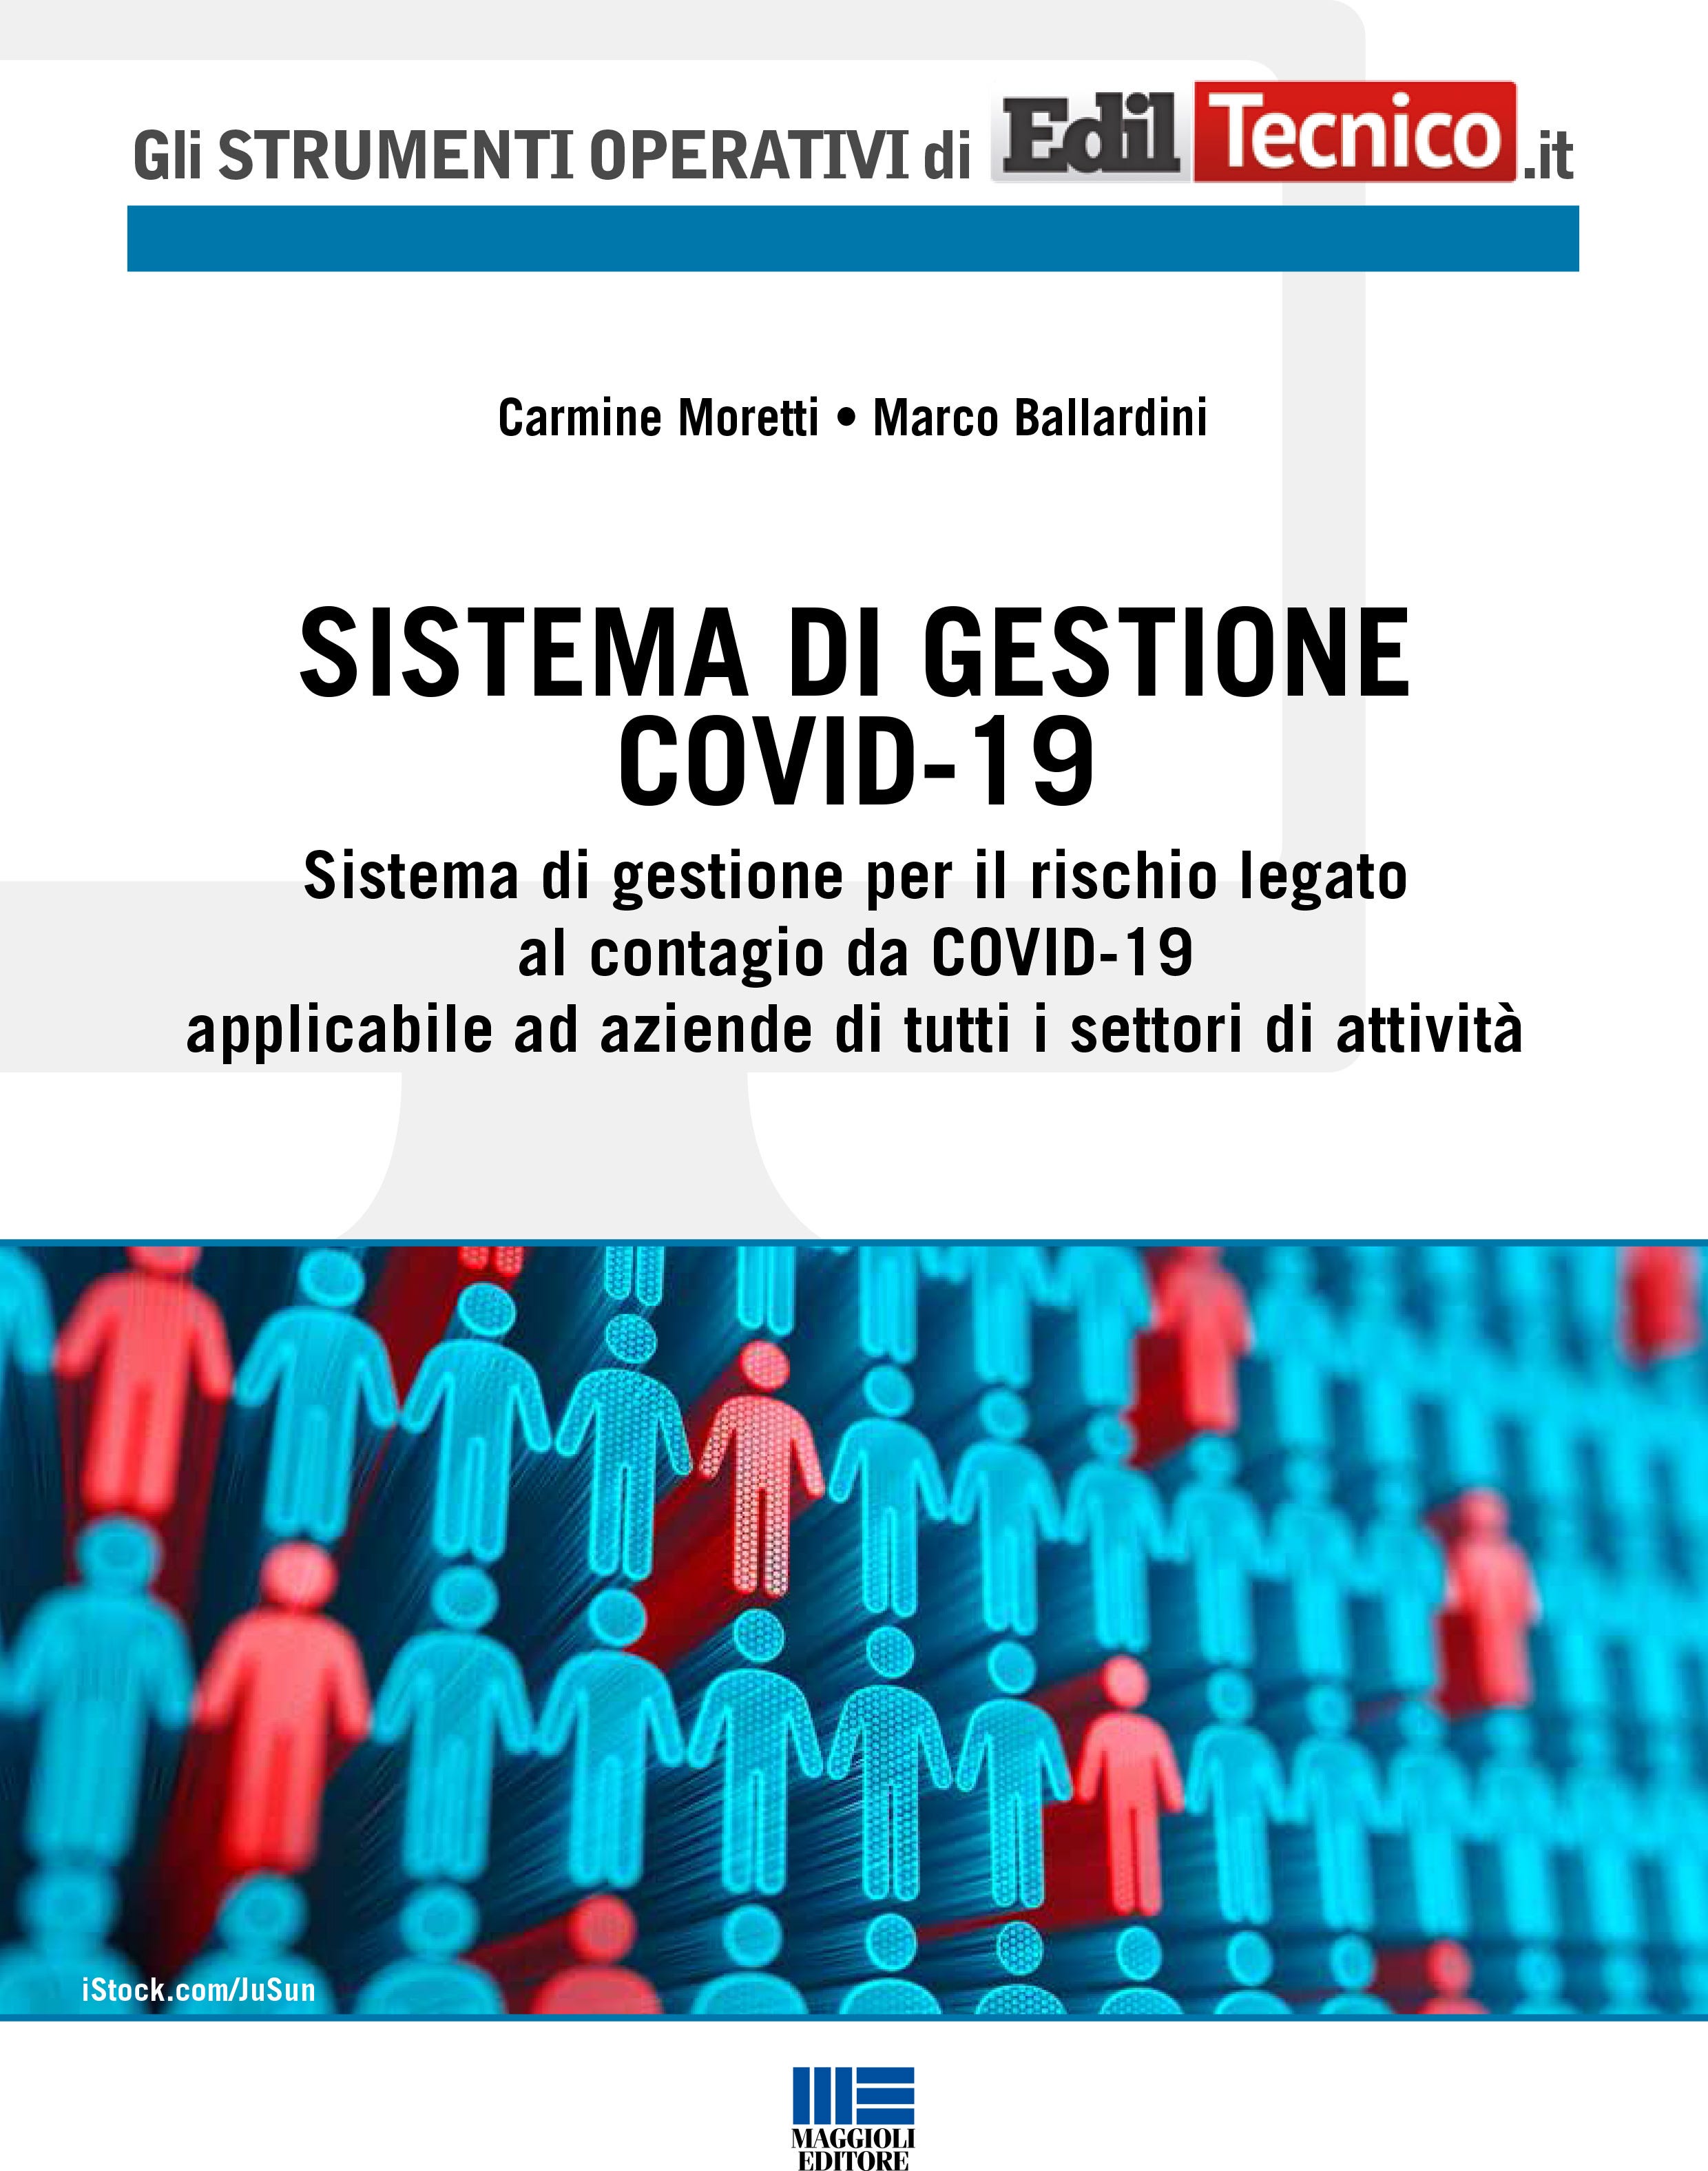 Sistema di gestione Covid-19